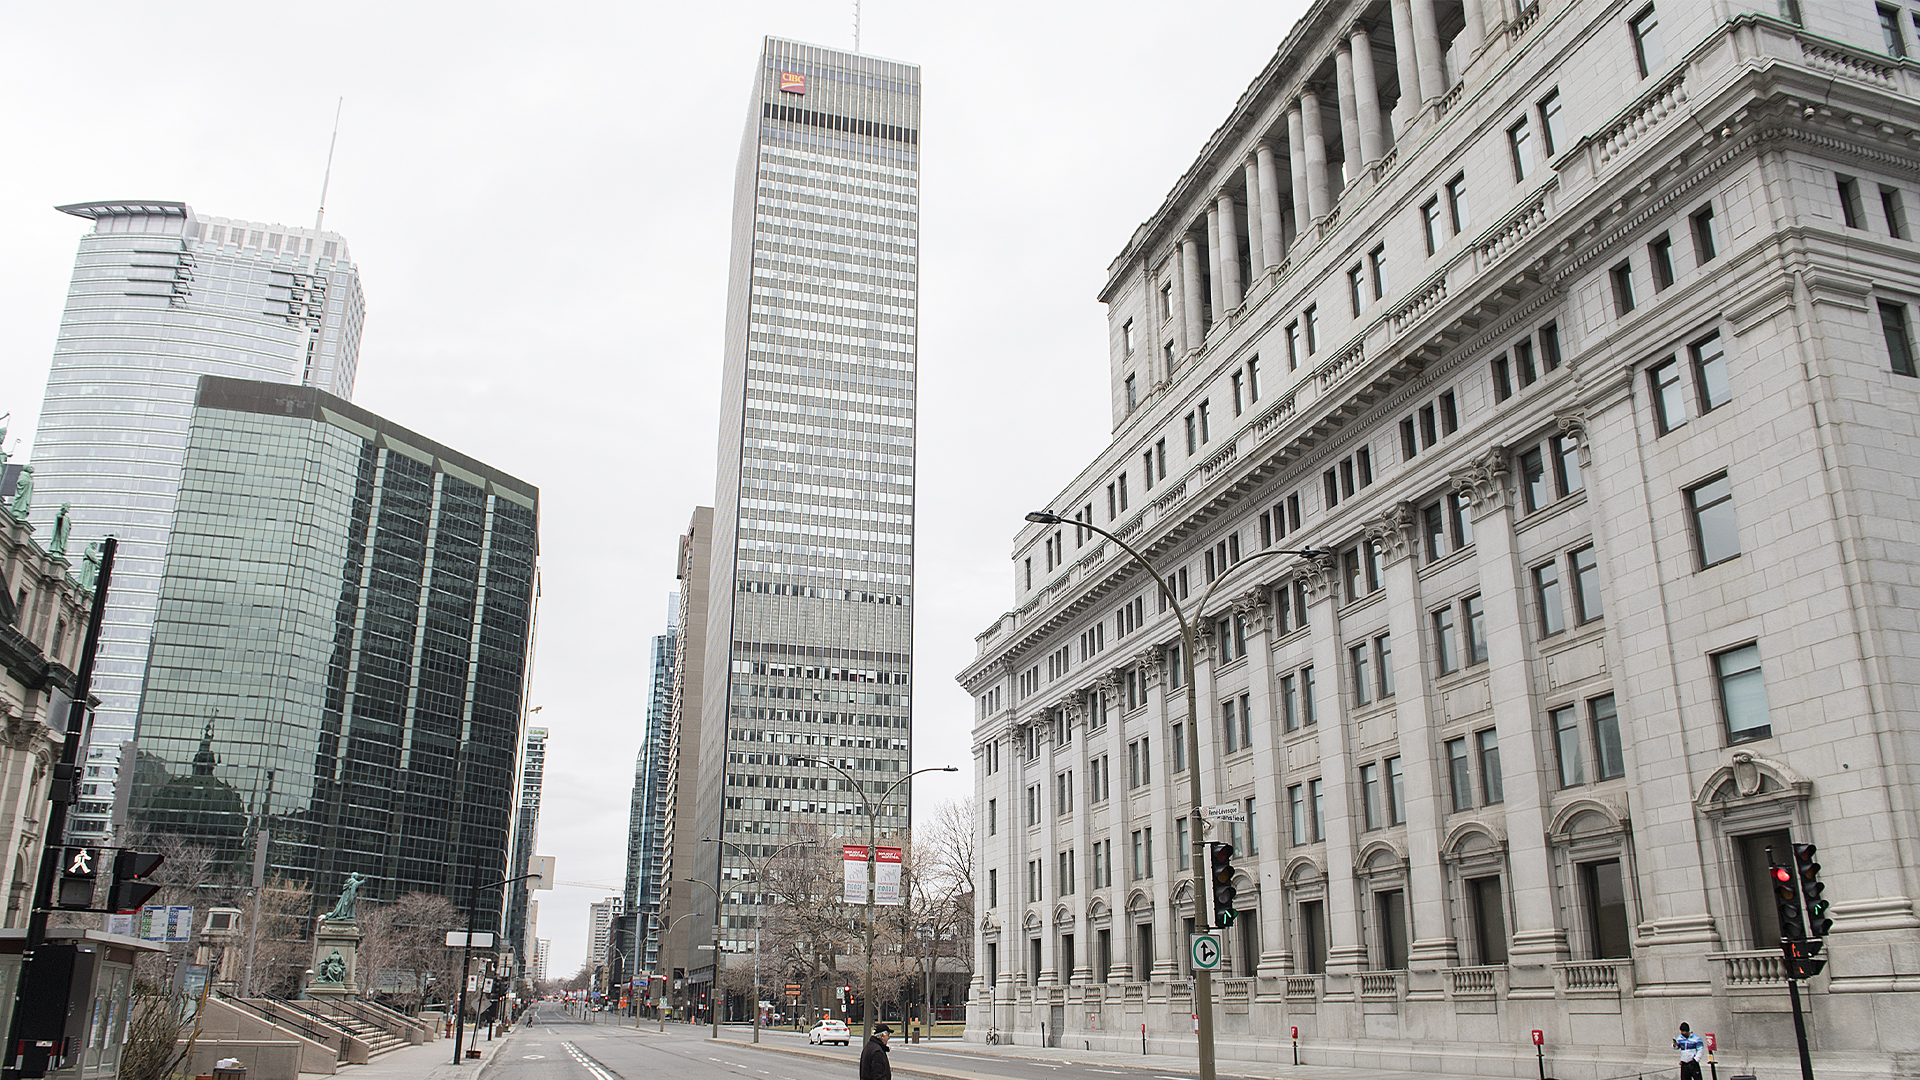 Le retour du tourisme et des activités au centre-ville de Montréal a permis une reprise de la vente au détail dans la métropole, selon un rapport de la société immobilière JLL publié jeudi.